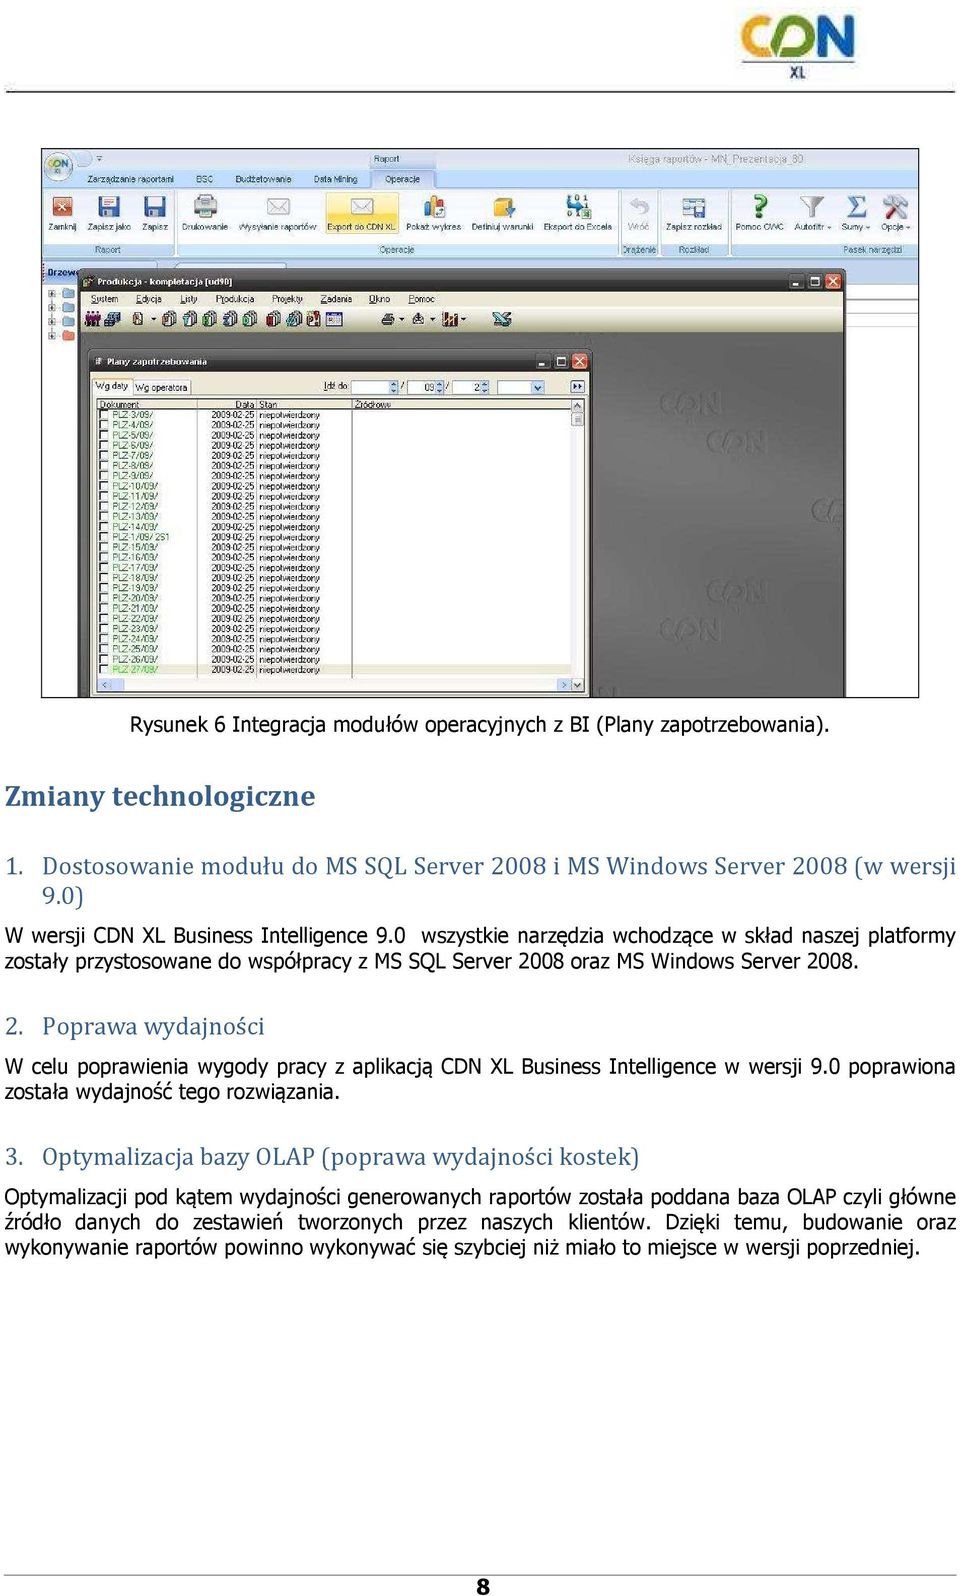 08 oraz MS Windows Server 2008. 2. Poprawa wydajności W celu poprawienia wygody pracy z aplikacją CDN XL Business Intelligence w wersji 9.0 poprawiona została wydajność tego rozwiązania. 3.